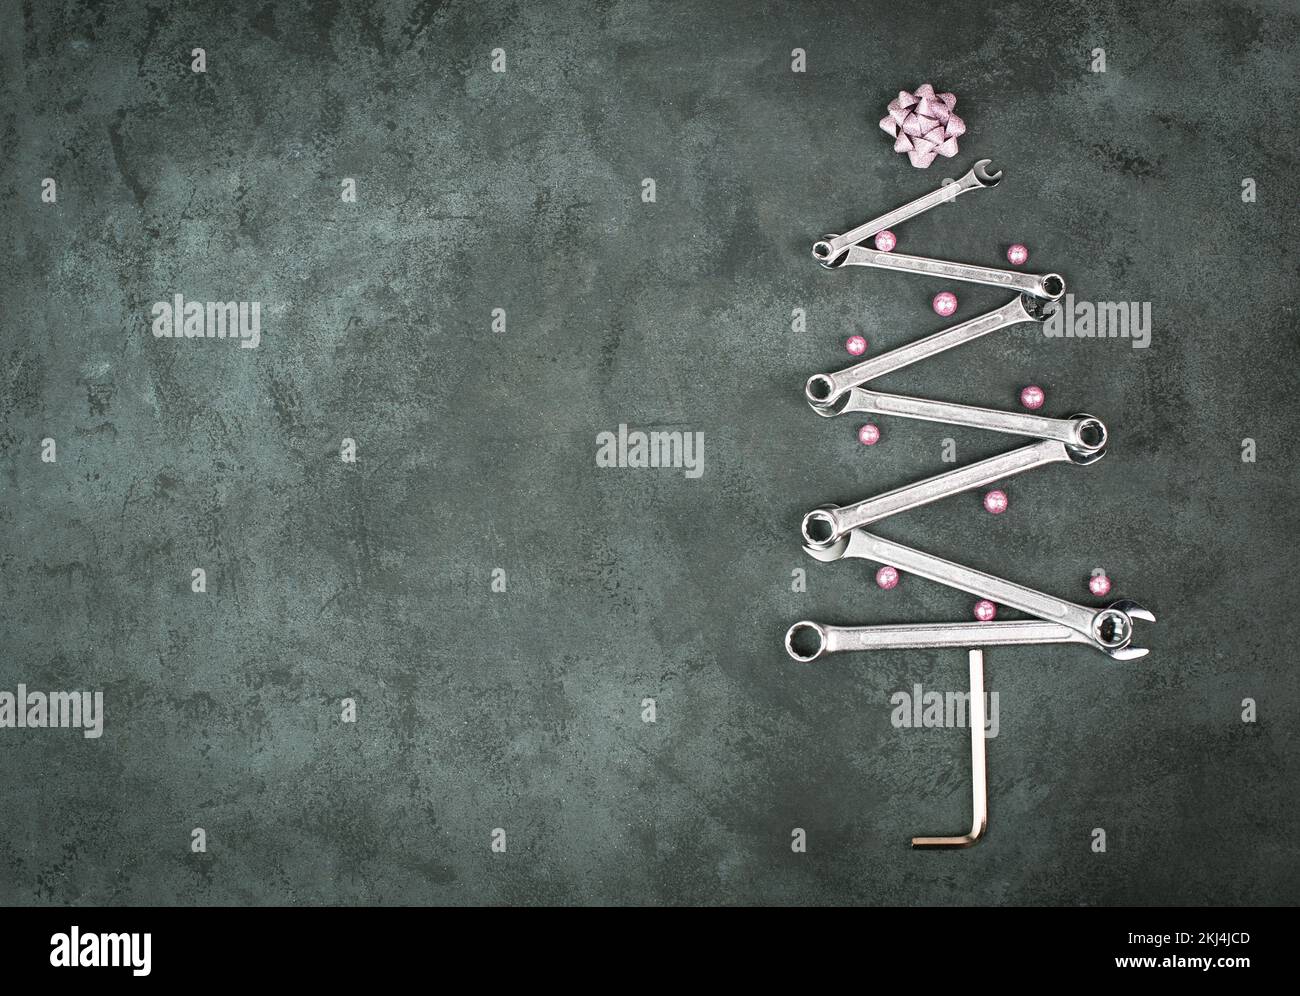 Árbol de Navidad con llaves y bolas, tarjeta de felicitación de año nuevo con herramientas de reparación, fondo oscuro Foto de stock